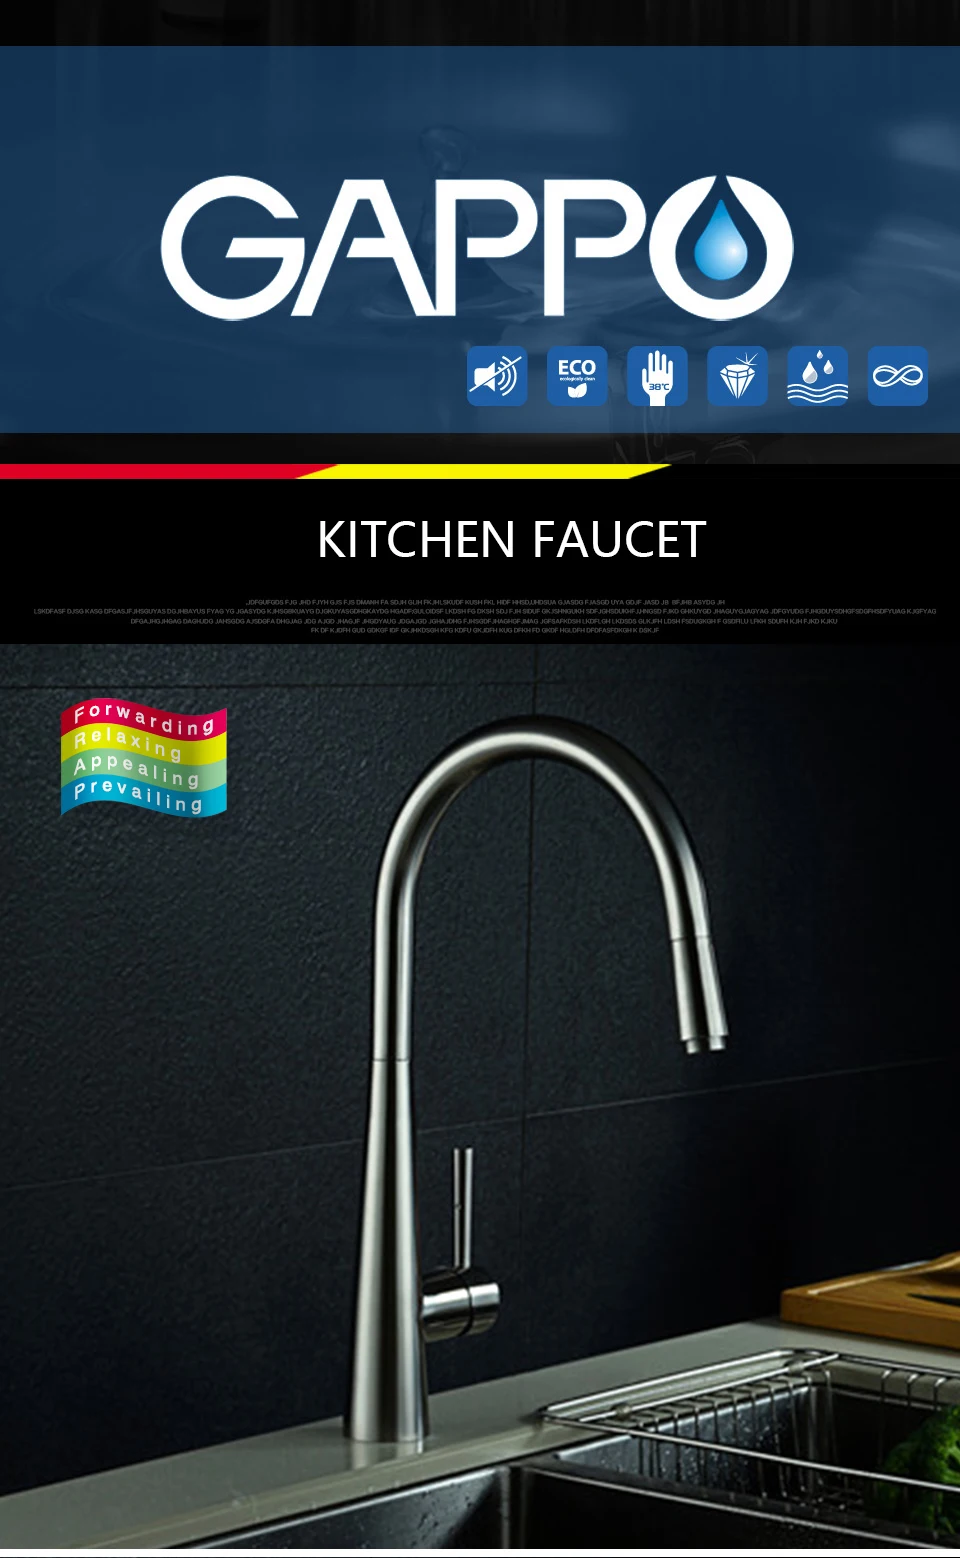 Gappo нержавеющая сталь Кухня смесители вытащить Кухня Раковина кран воды смесители torneira cozinha кухонная раковина коснитесь